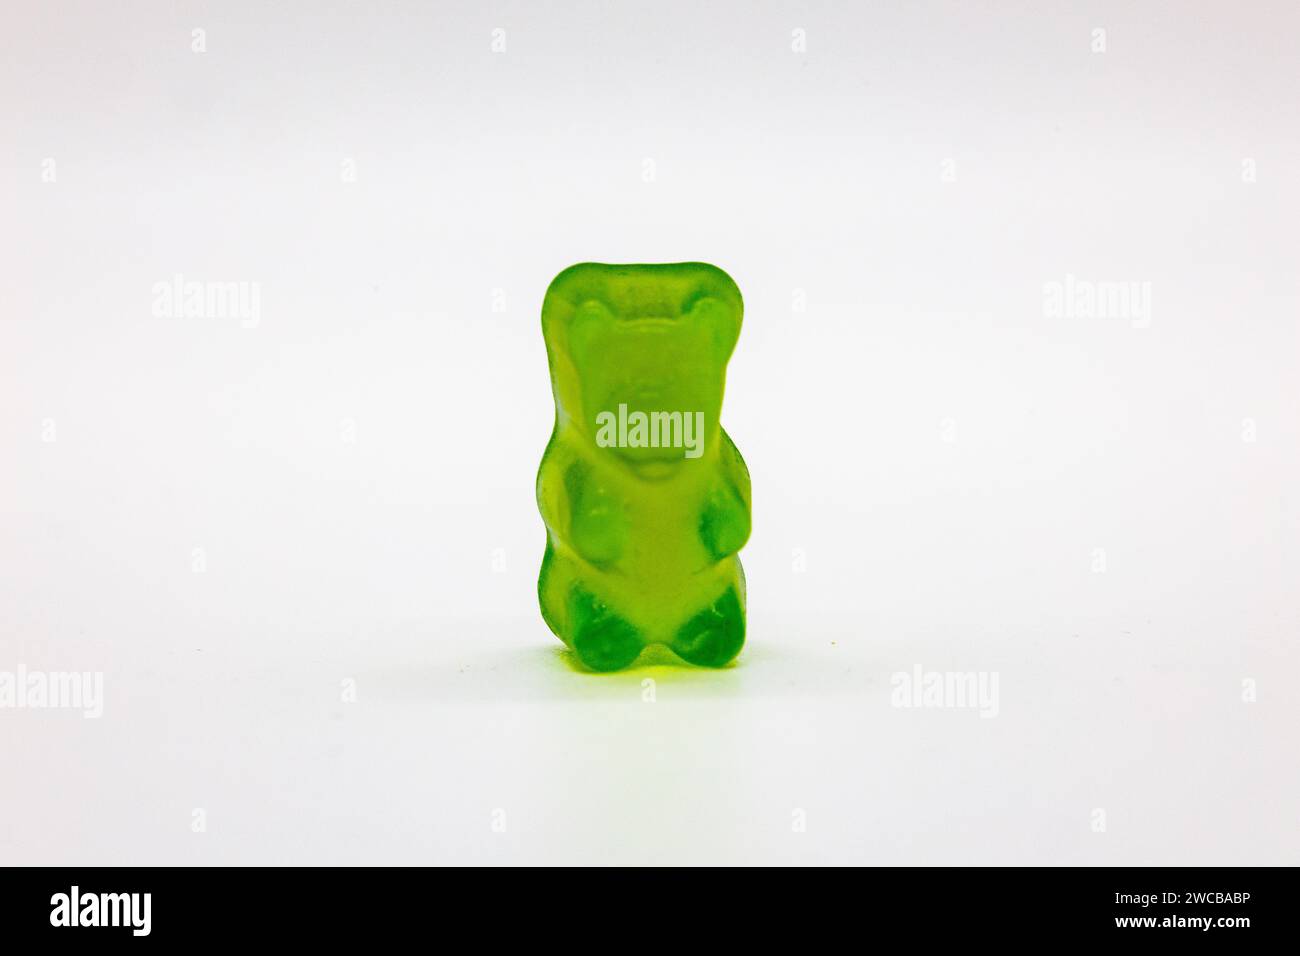 Un ours gommeux coloré est placé sur une nappe vert pomme vibrante, créant une composition ludique et accrocheuse Banque D'Images